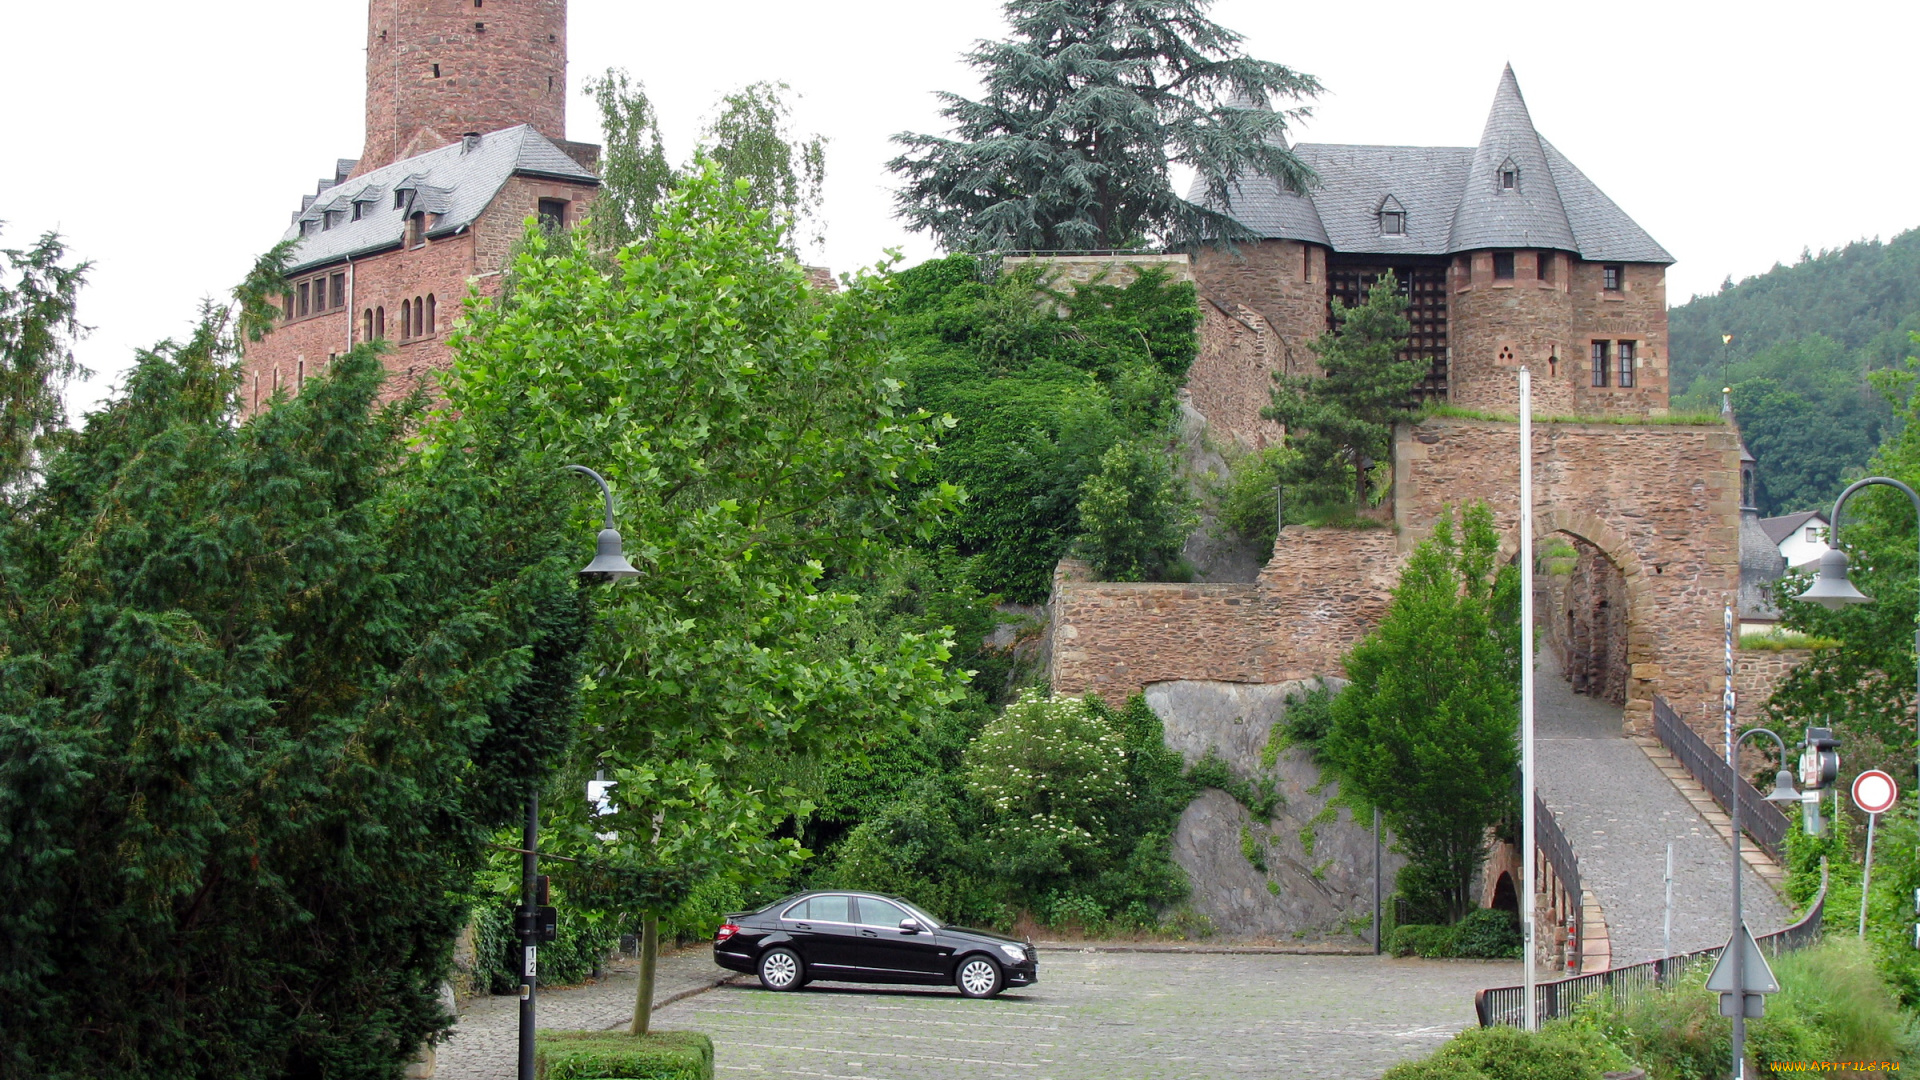 castle, hengebach, germany, города, дворцы, замки, крепости, замок, мост, деревья